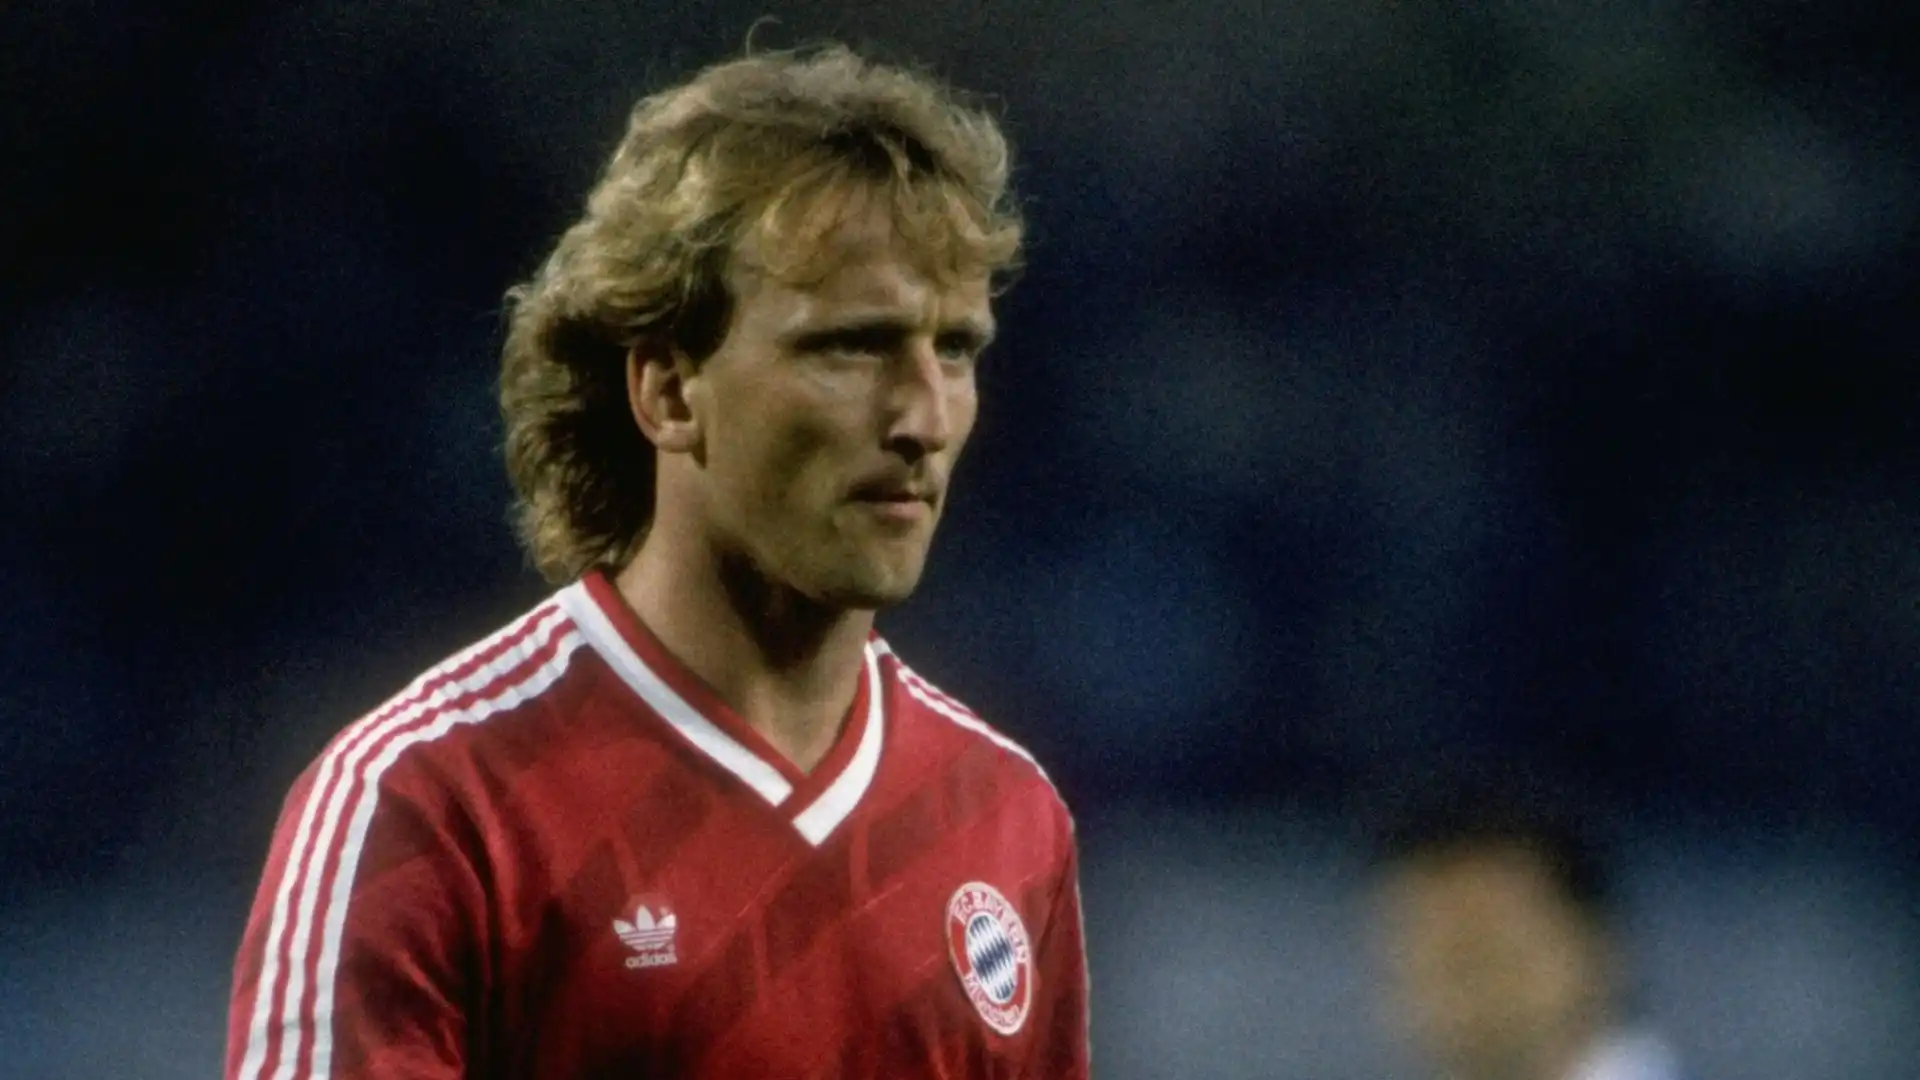 Nel 1986 passa al Bayern Monaco, dove resta per due stagioni